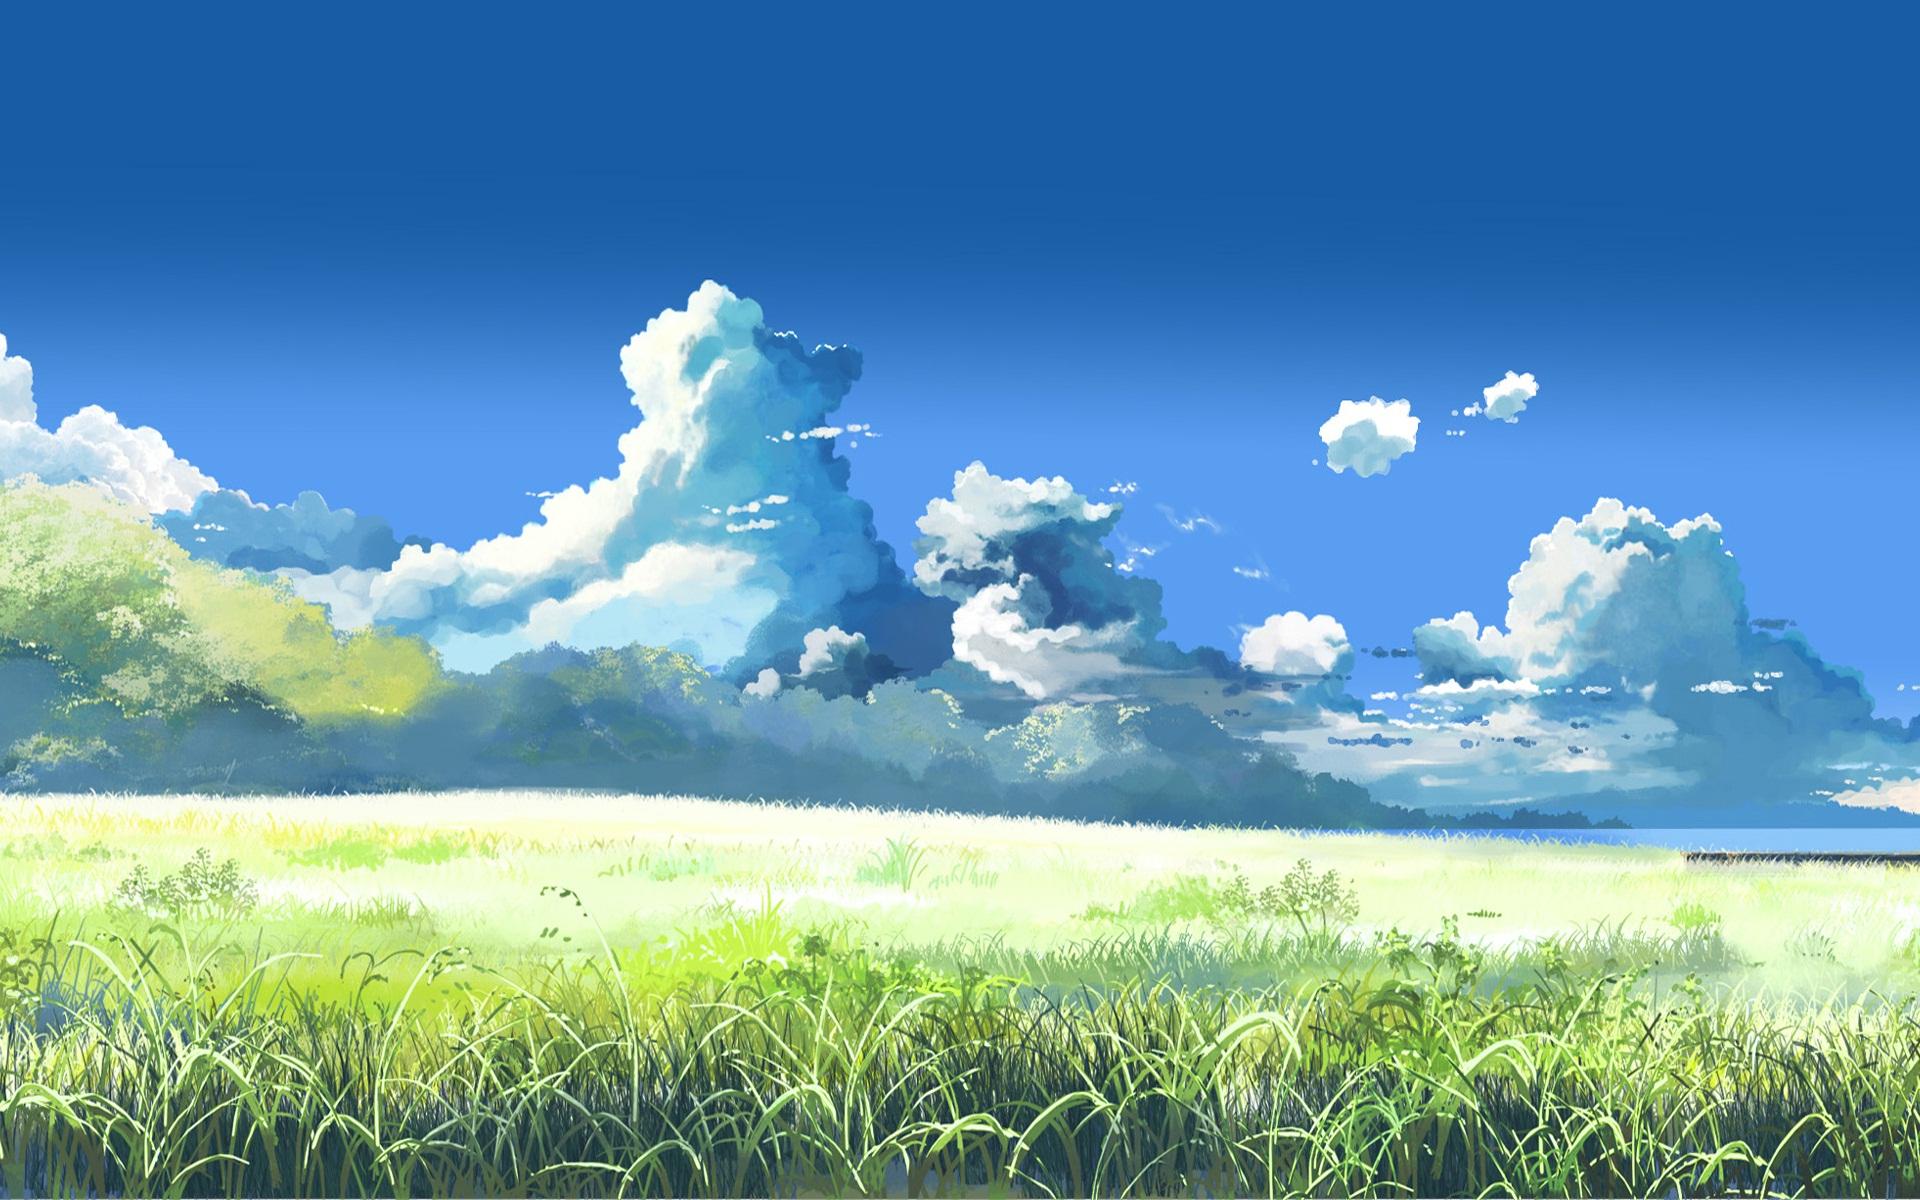 Anime Landscape Wallpaper Hd Pixelstalk Net